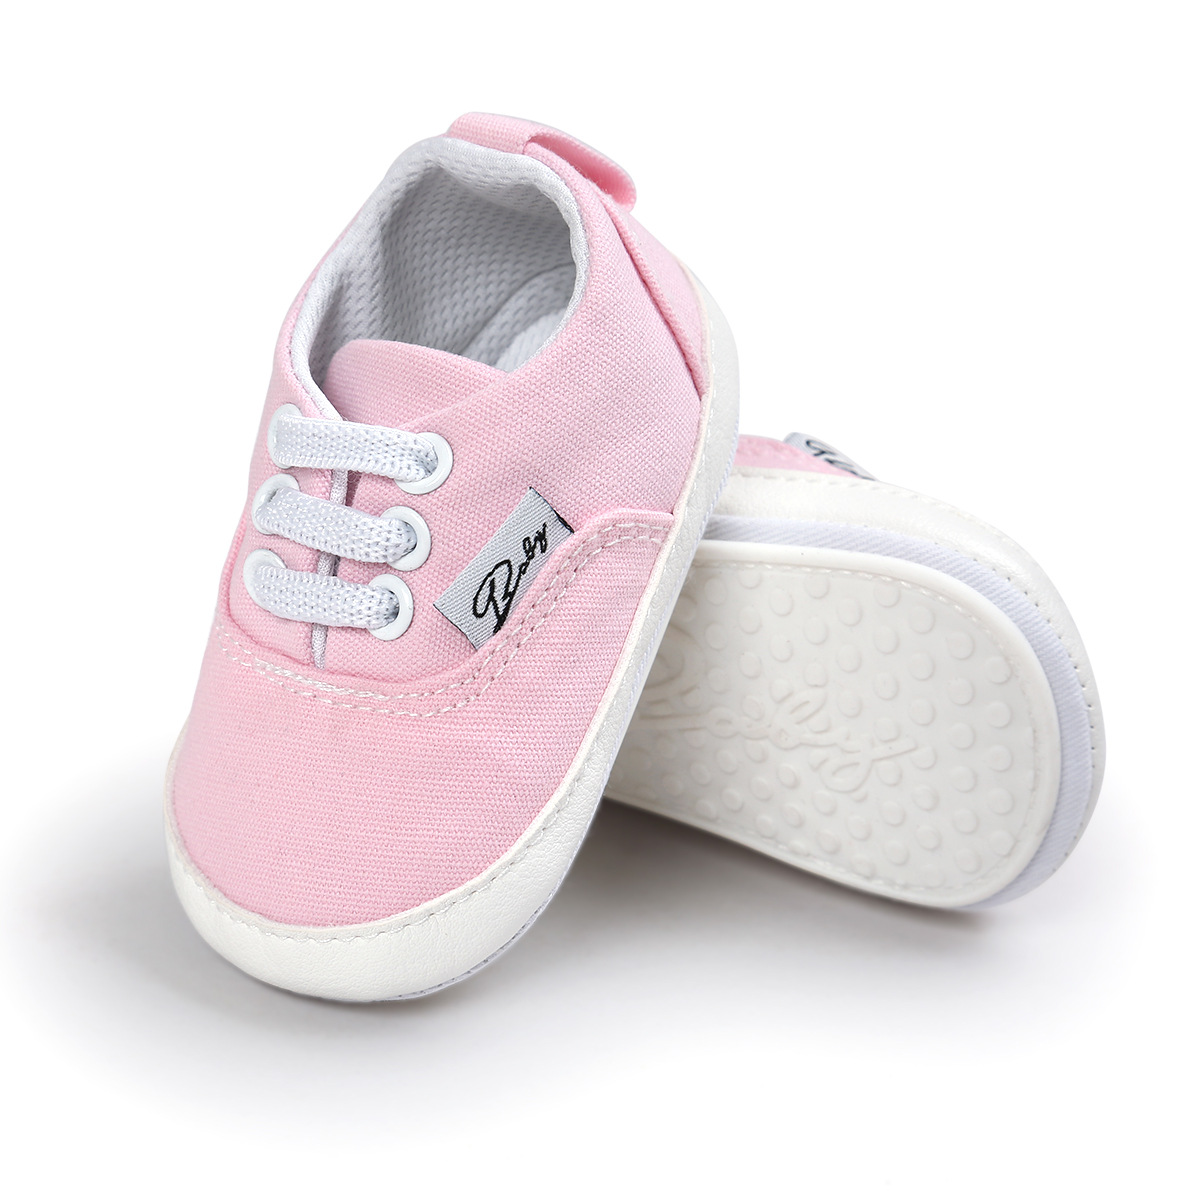 Chaussures bébé en coton - Ref 3436710 Image 65